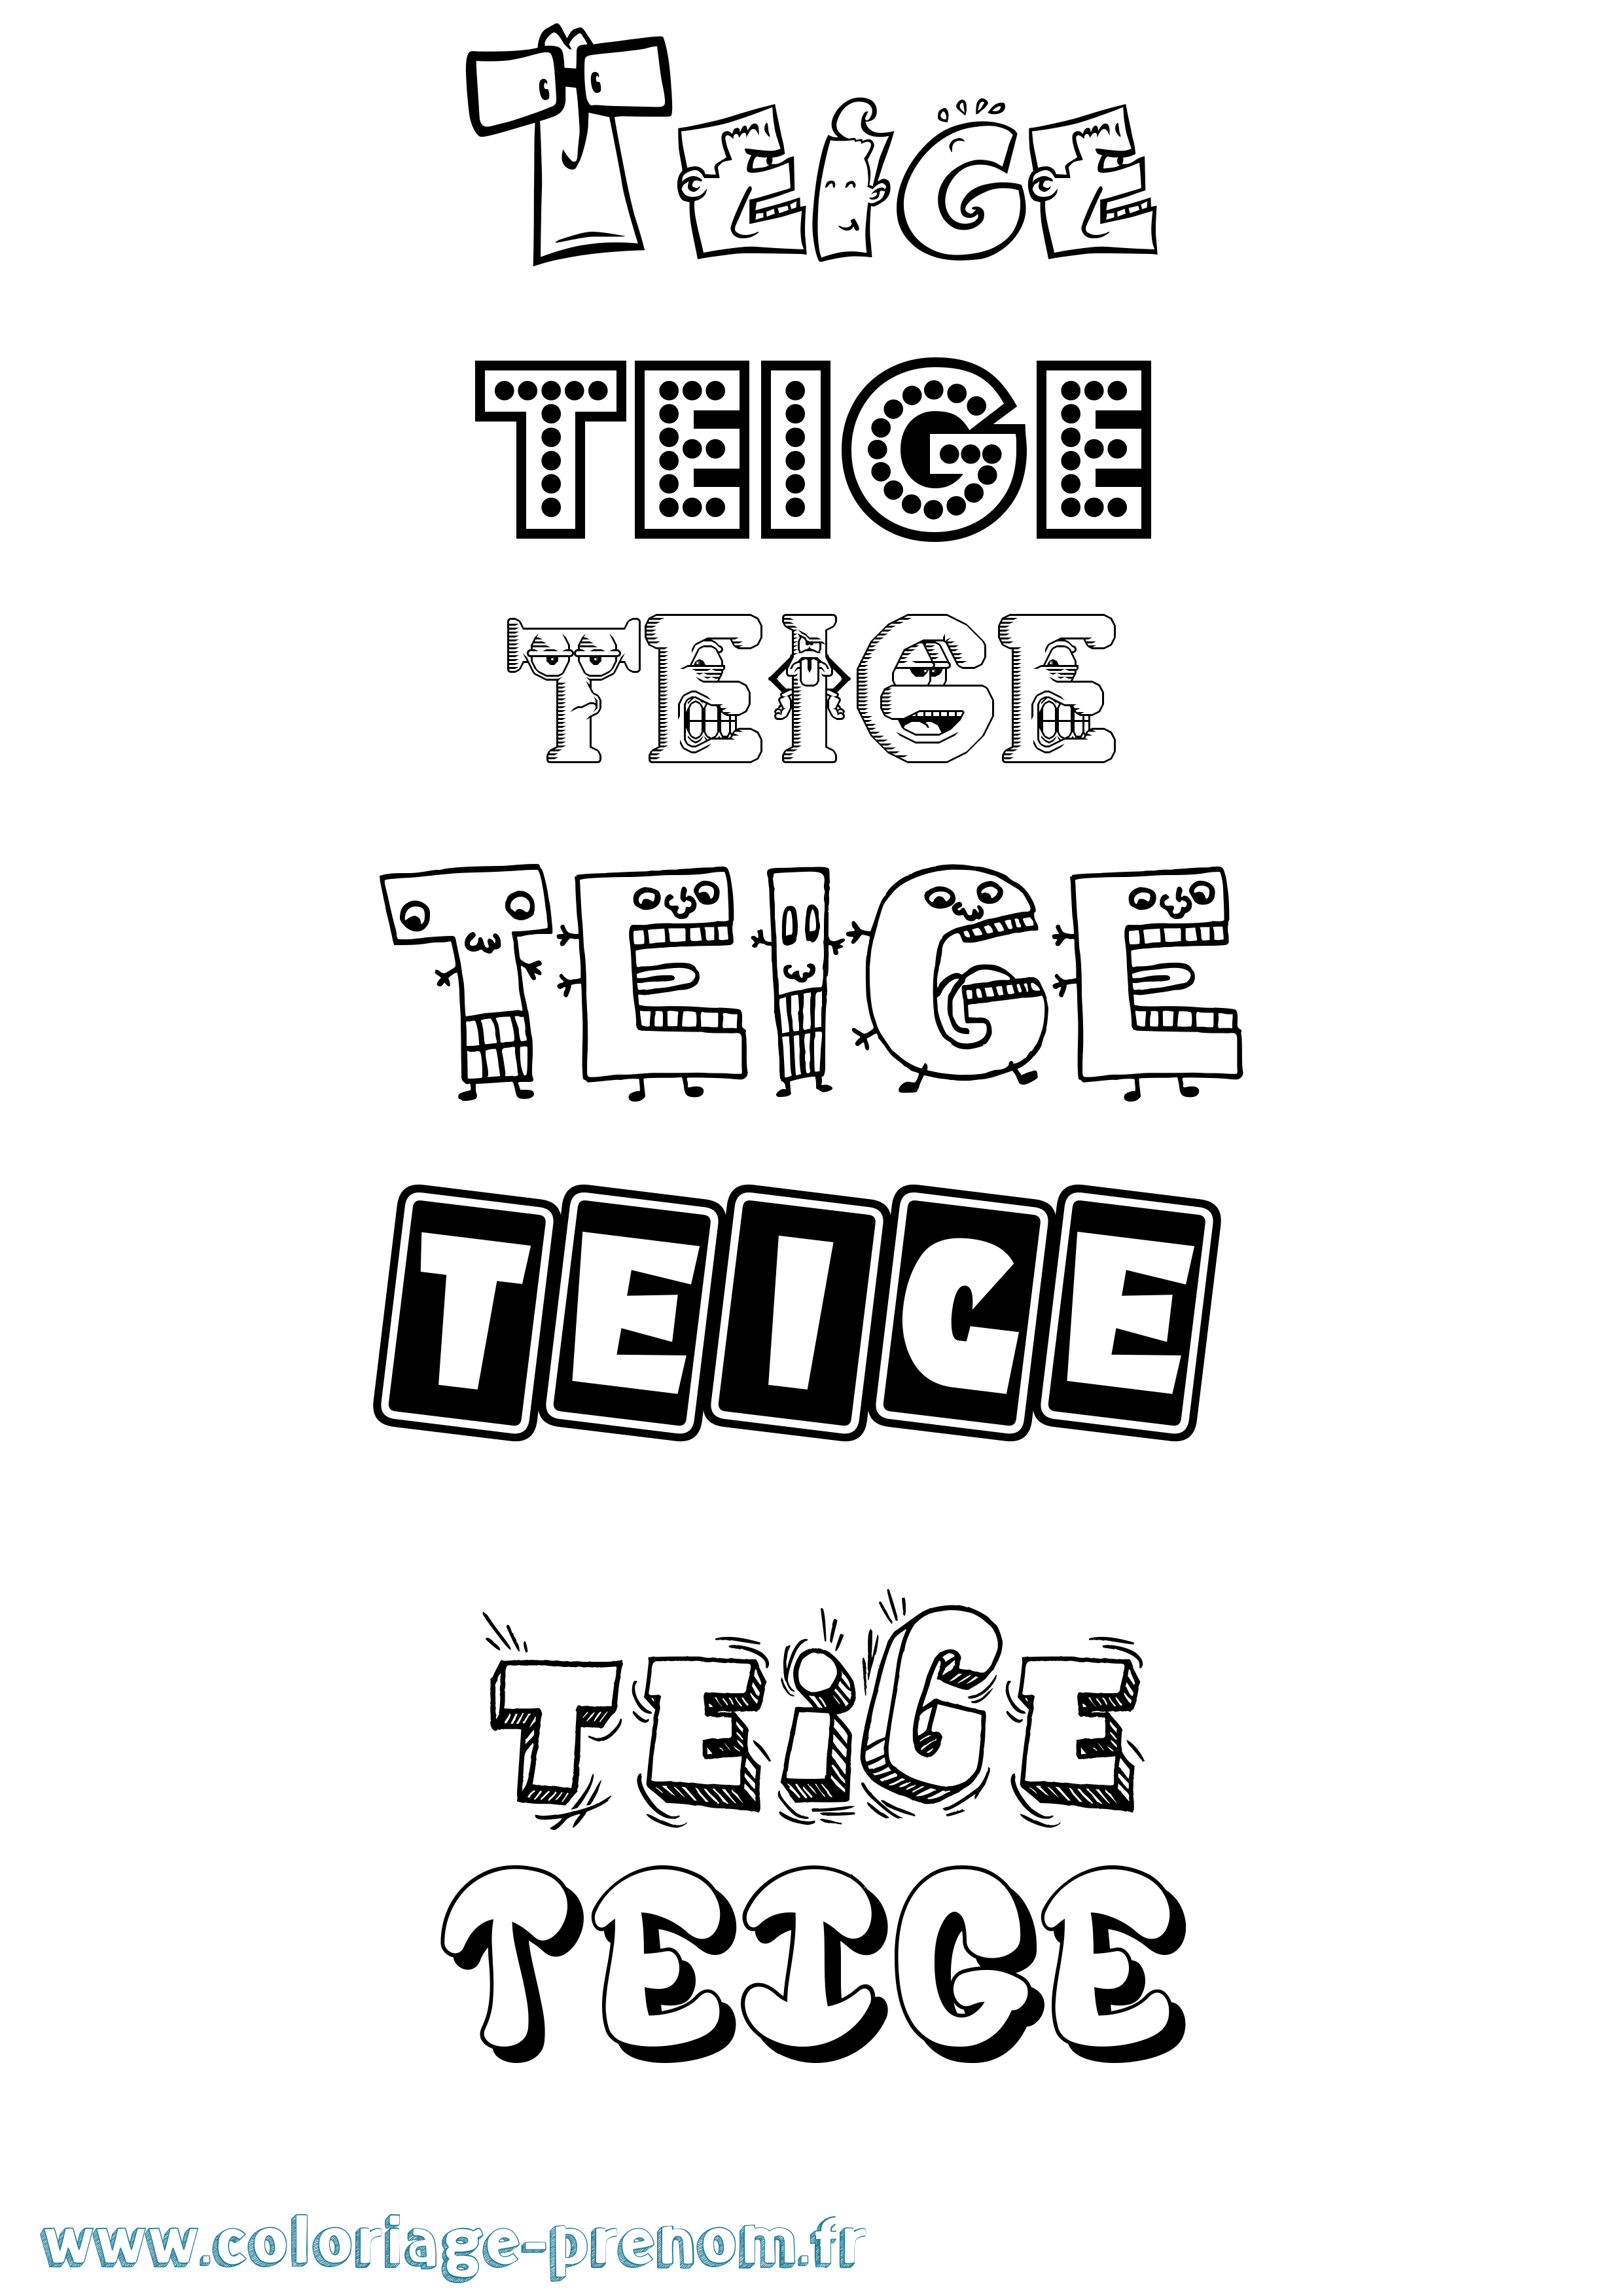 Coloriage prénom Teige Fun